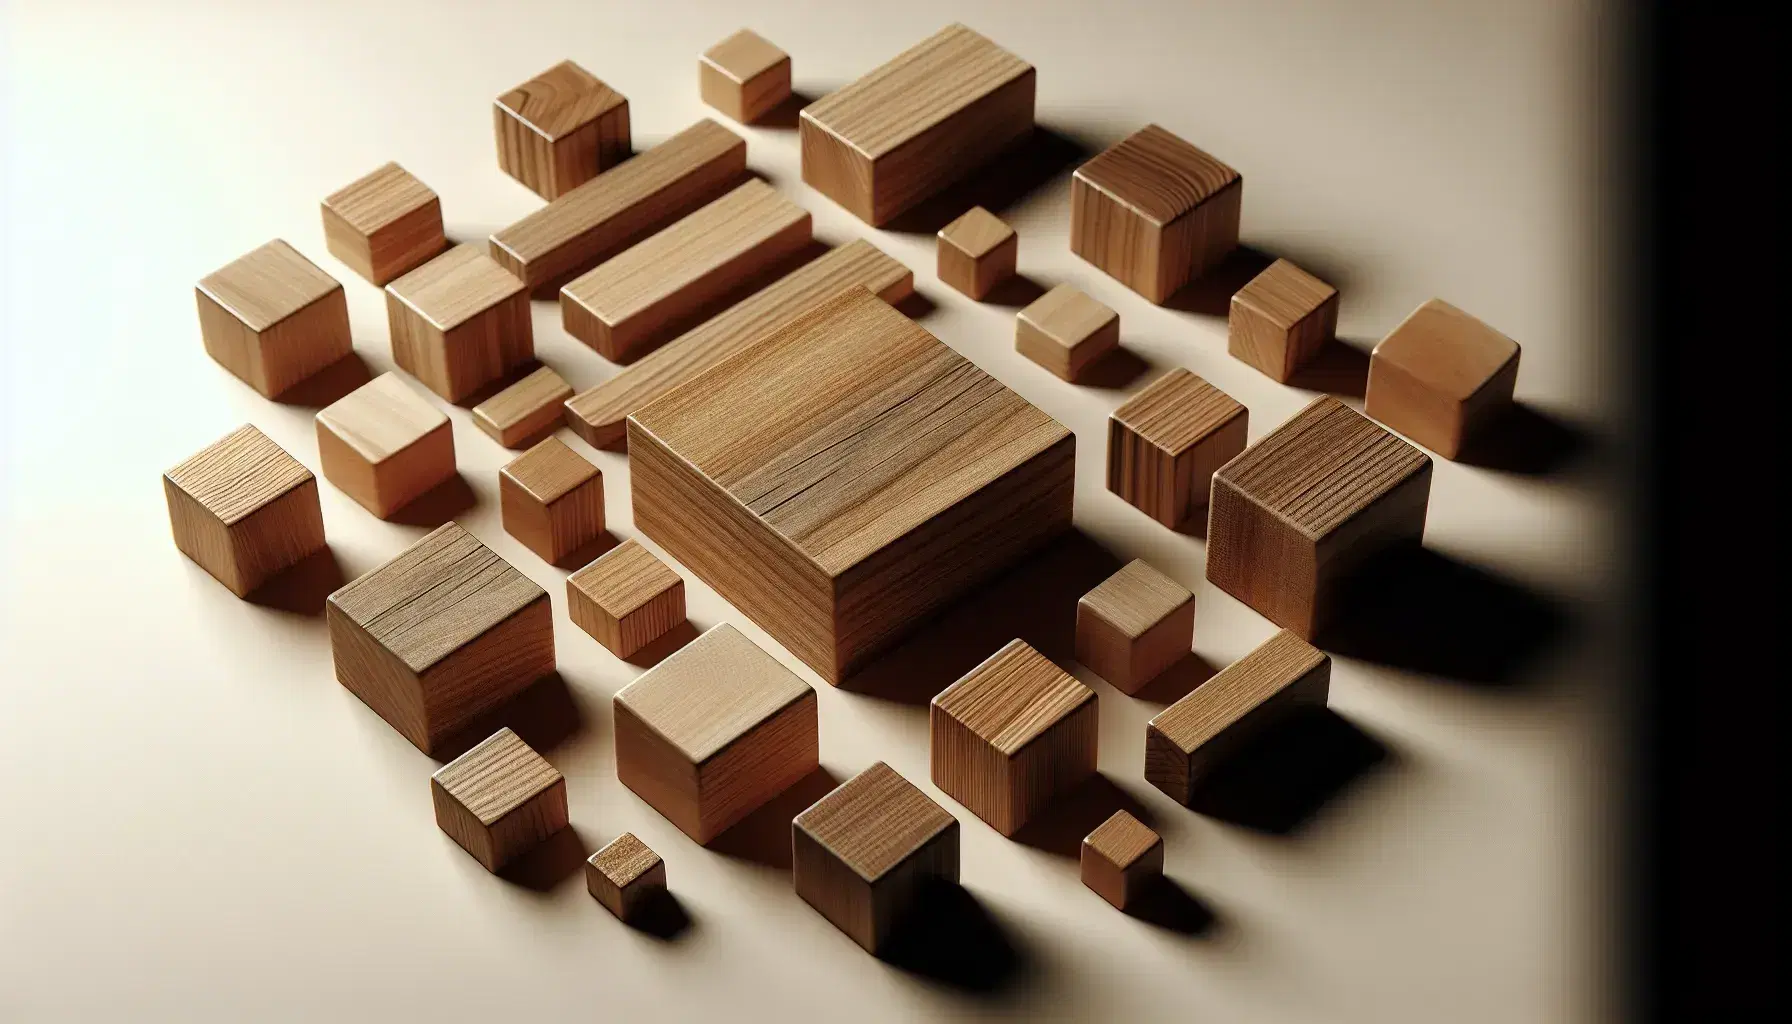 Bloques de madera de distintos tamaños y formas, con textura visible, dispuestos alrededor de un bloque central más grande sobre superficie lisa.